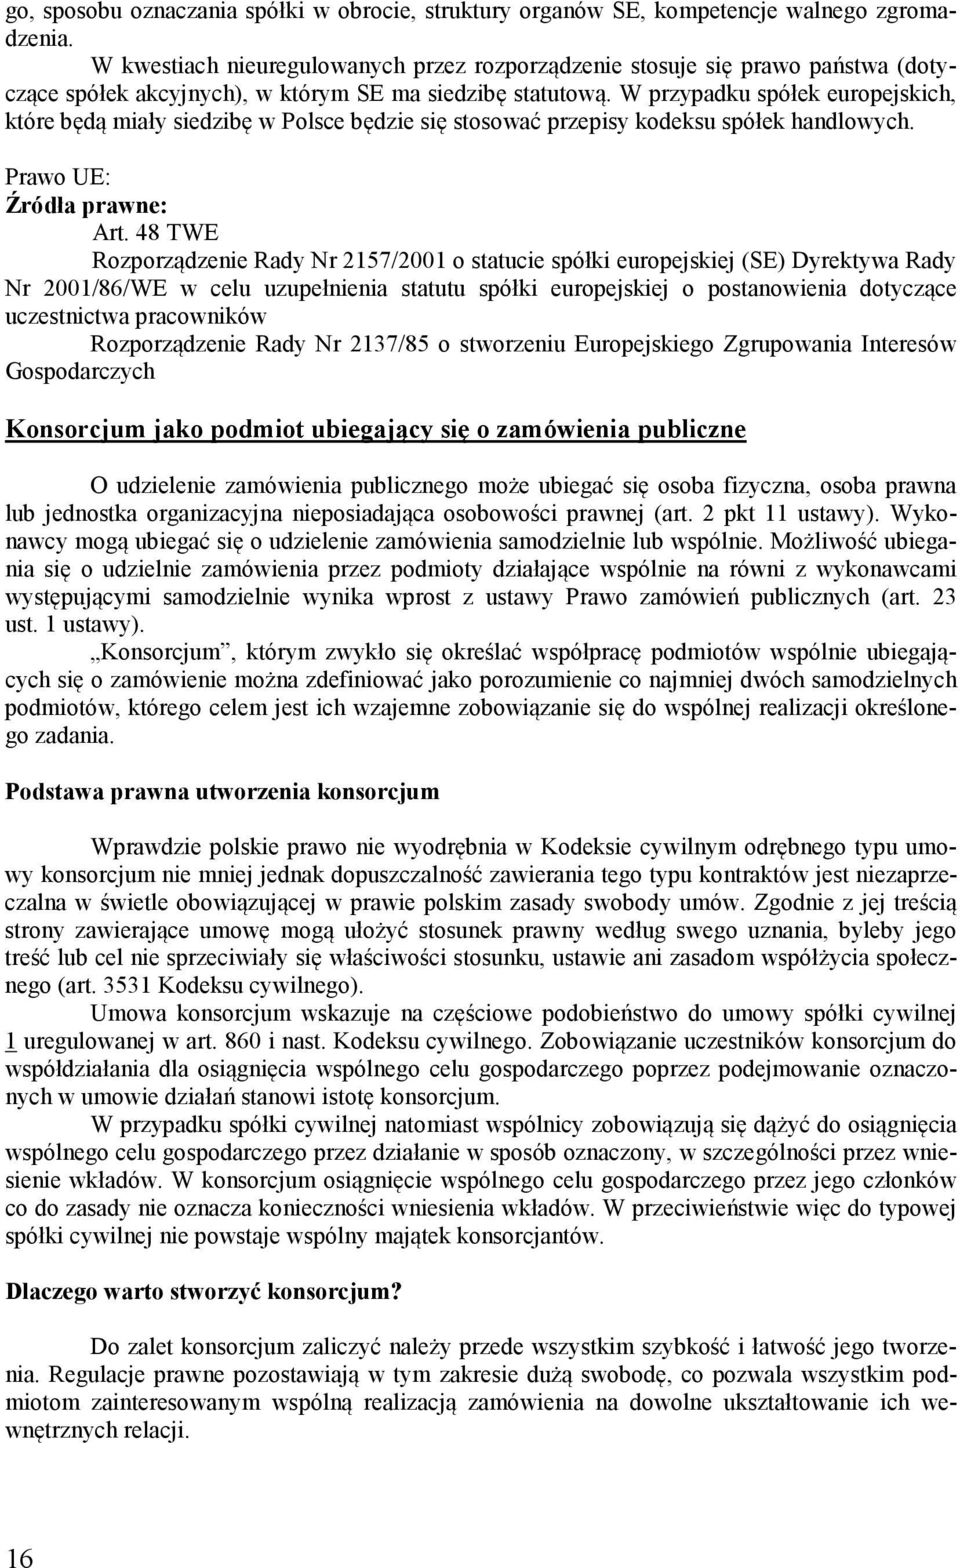 W przypadku spółek europejskich, które będą miały siedzibę w Polsce będzie się stosować przepisy kodeksu spółek handlowych. Prawo UE: Źródła prawne: Art.